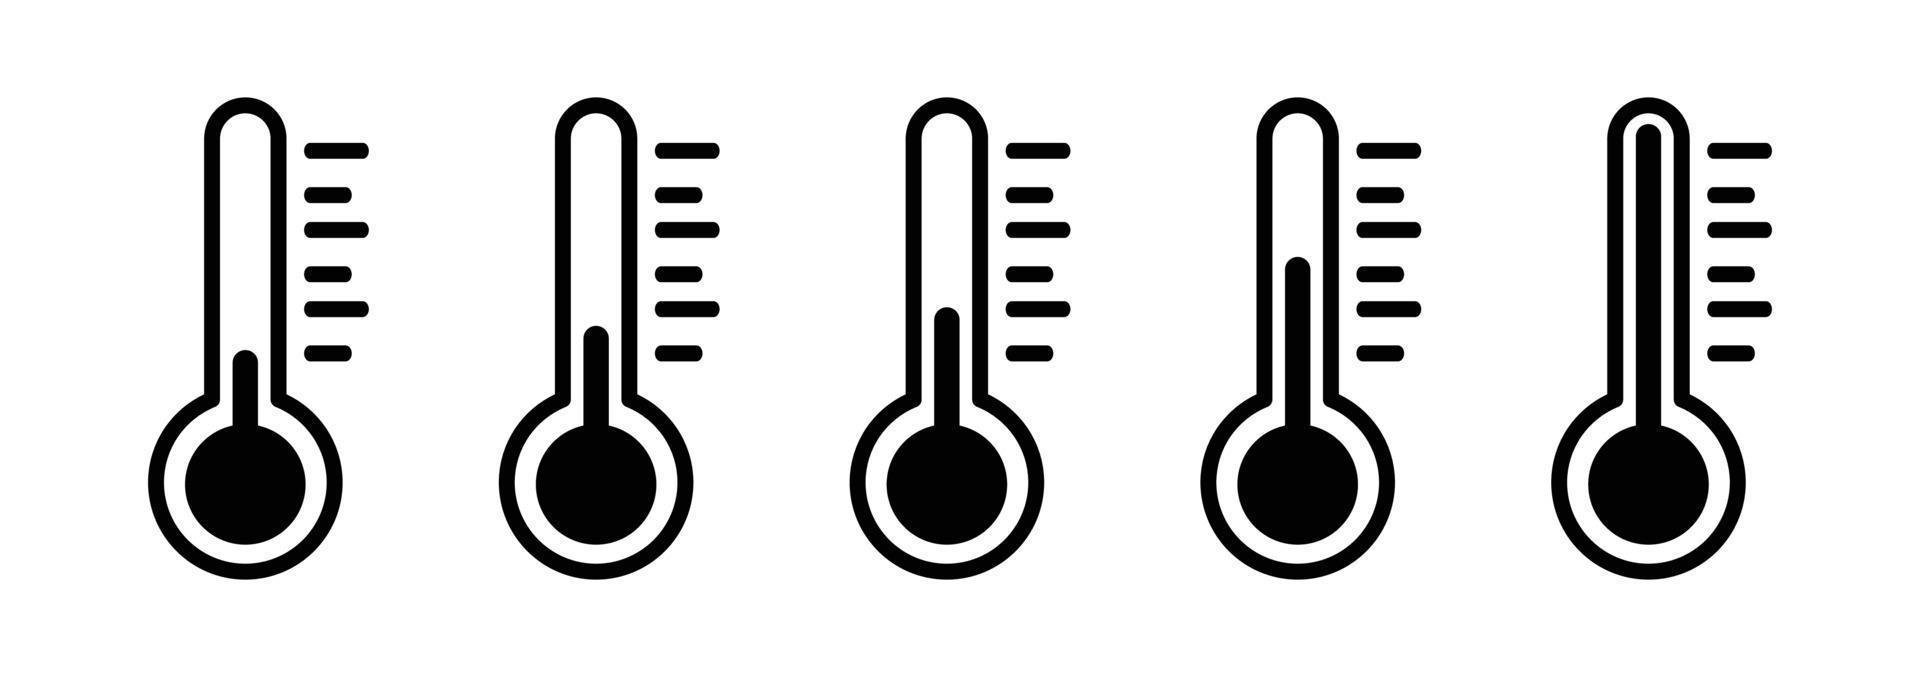 jeu d'icônes de température. signe météorologique. symbole d'échelle de température. vecteur